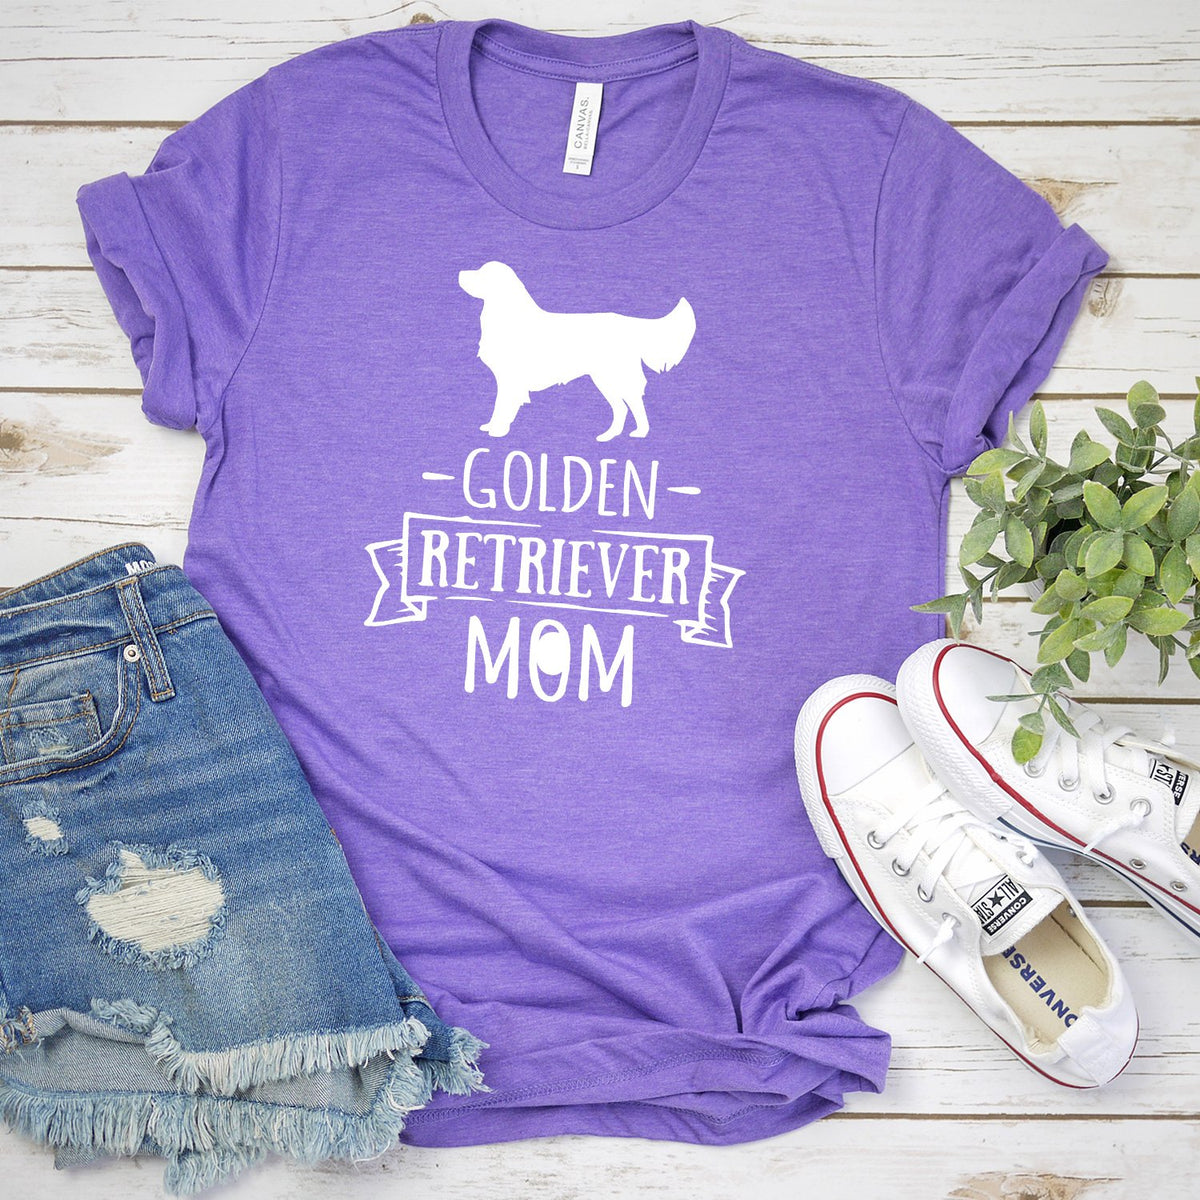 Golden Retriever Mom - Short Sleeve Tee Shirt